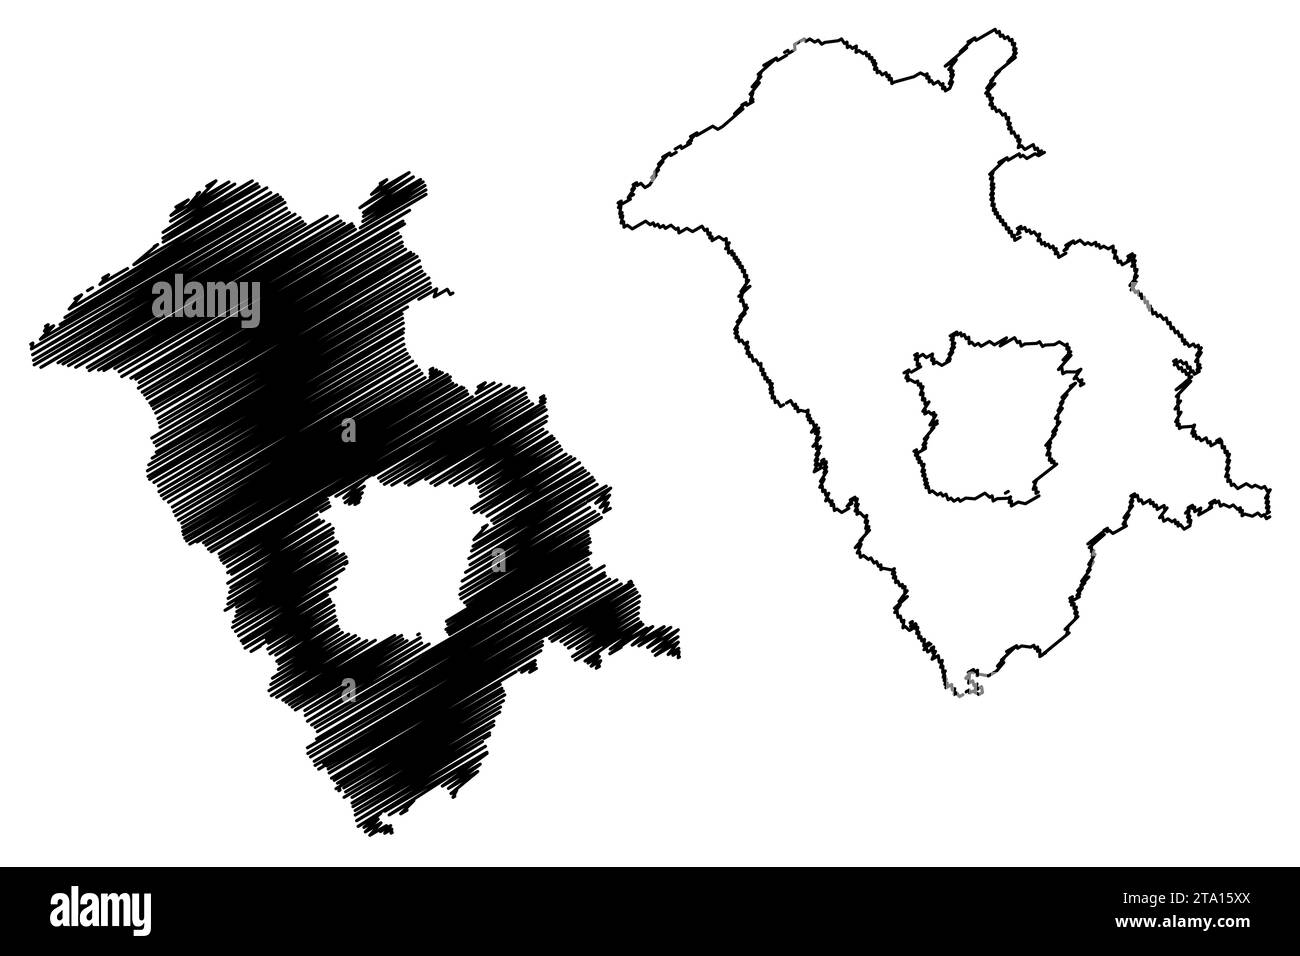 District de Graz-Umgebung (République d'Autriche ou état de Österreich, Styrie, Steiermark ou Štajerska) illustration vectorielle de carte, croquis de griffonnage Bezirk Graz Illustration de Vecteur